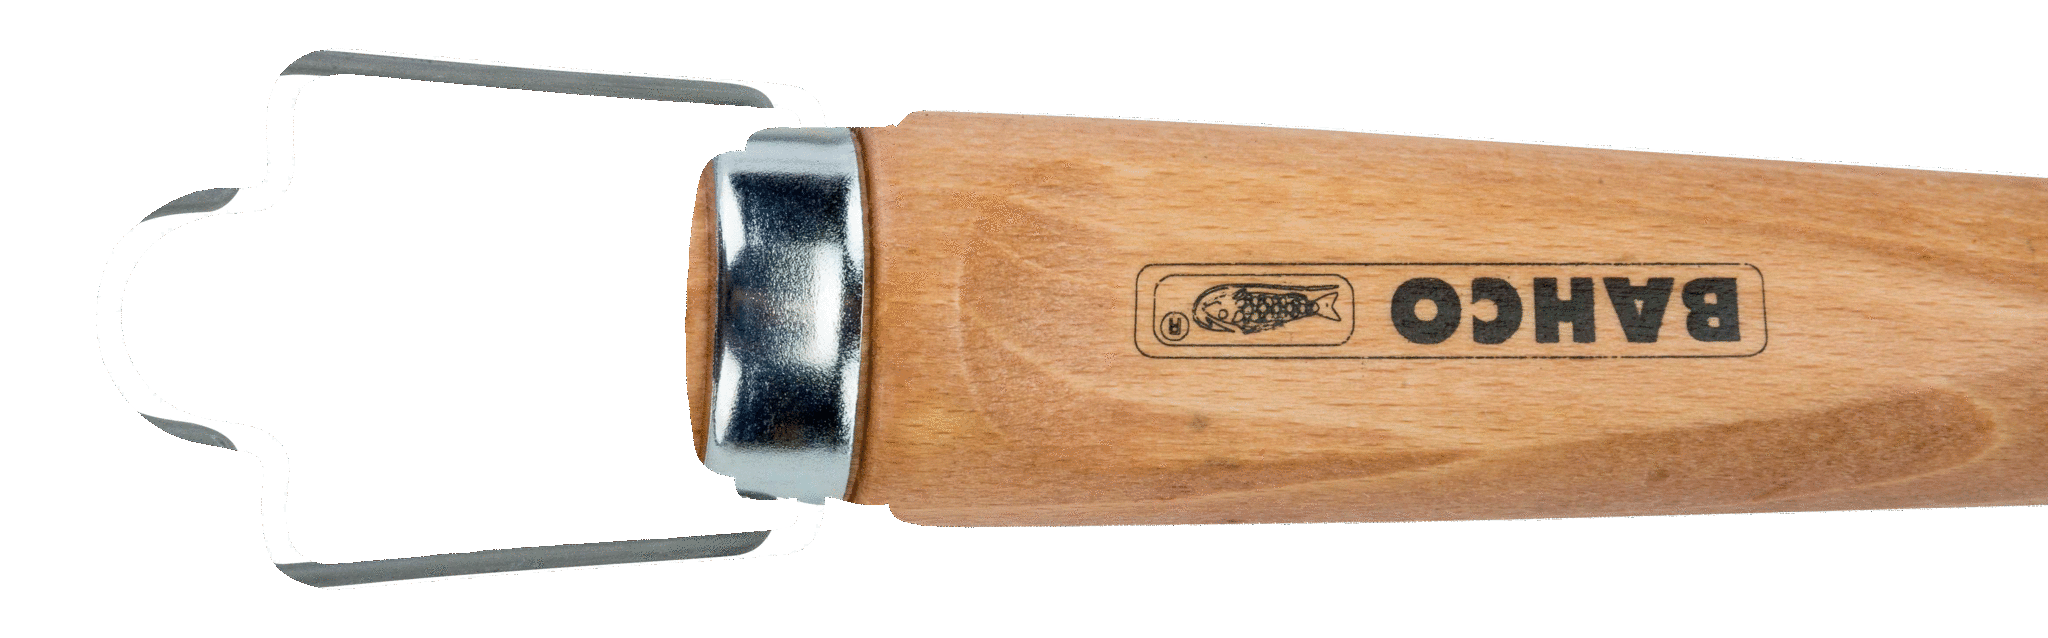 картинка Стамеска с деревянной рукояткой BAHCO 425-6 от магазина "Элит-инструмент"